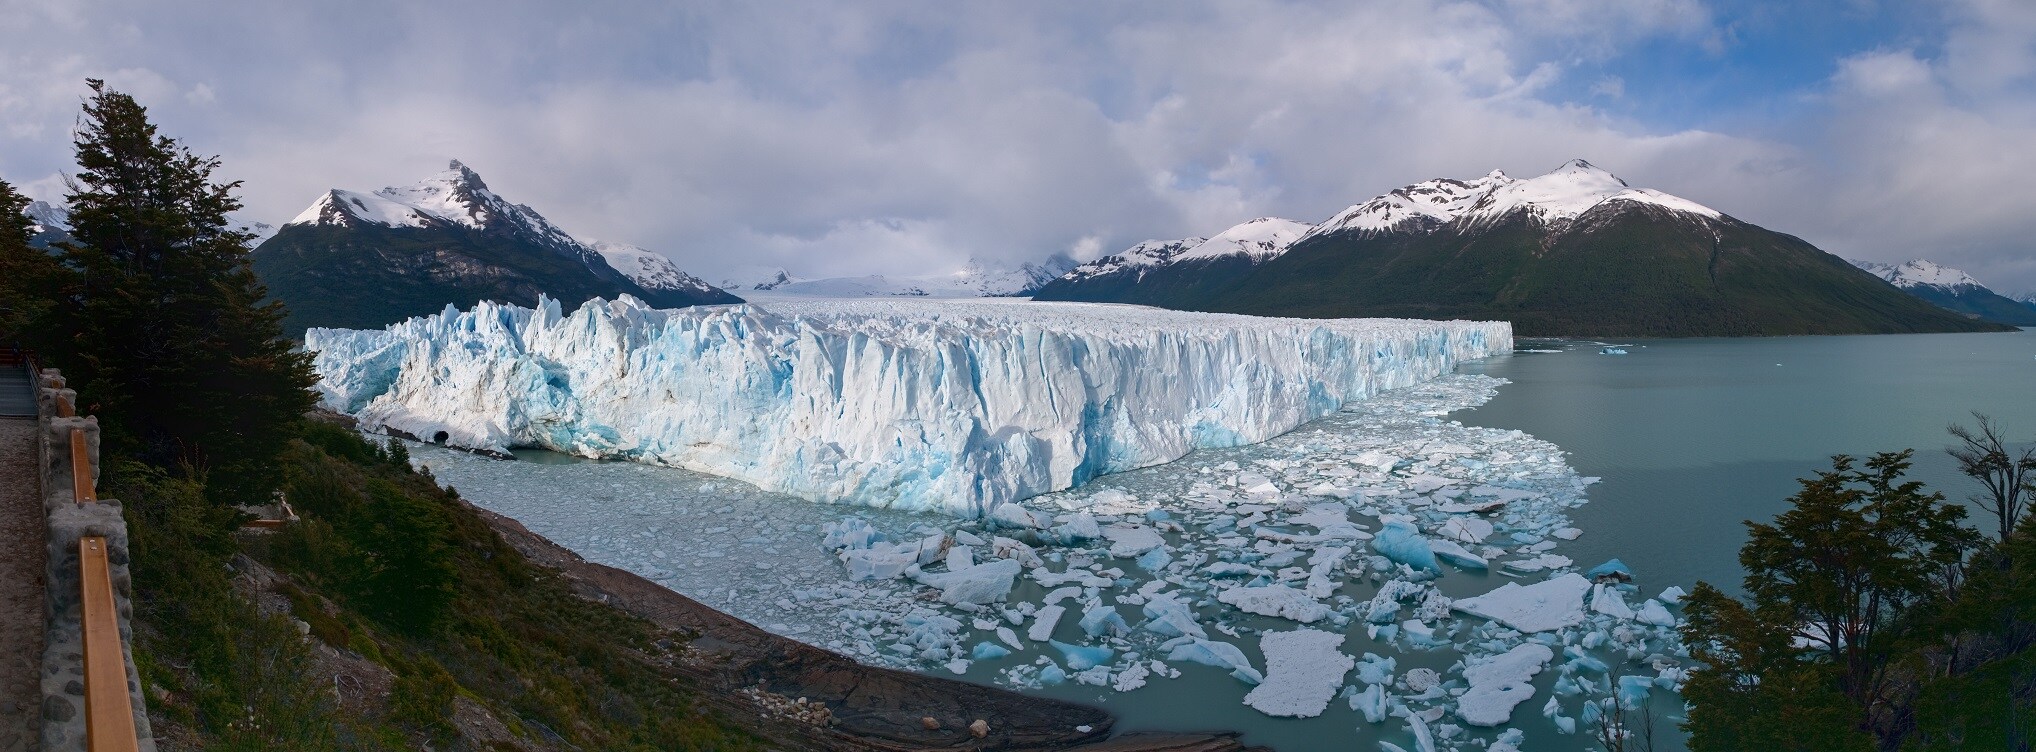 Perito Moreno Glacier Argentina 4